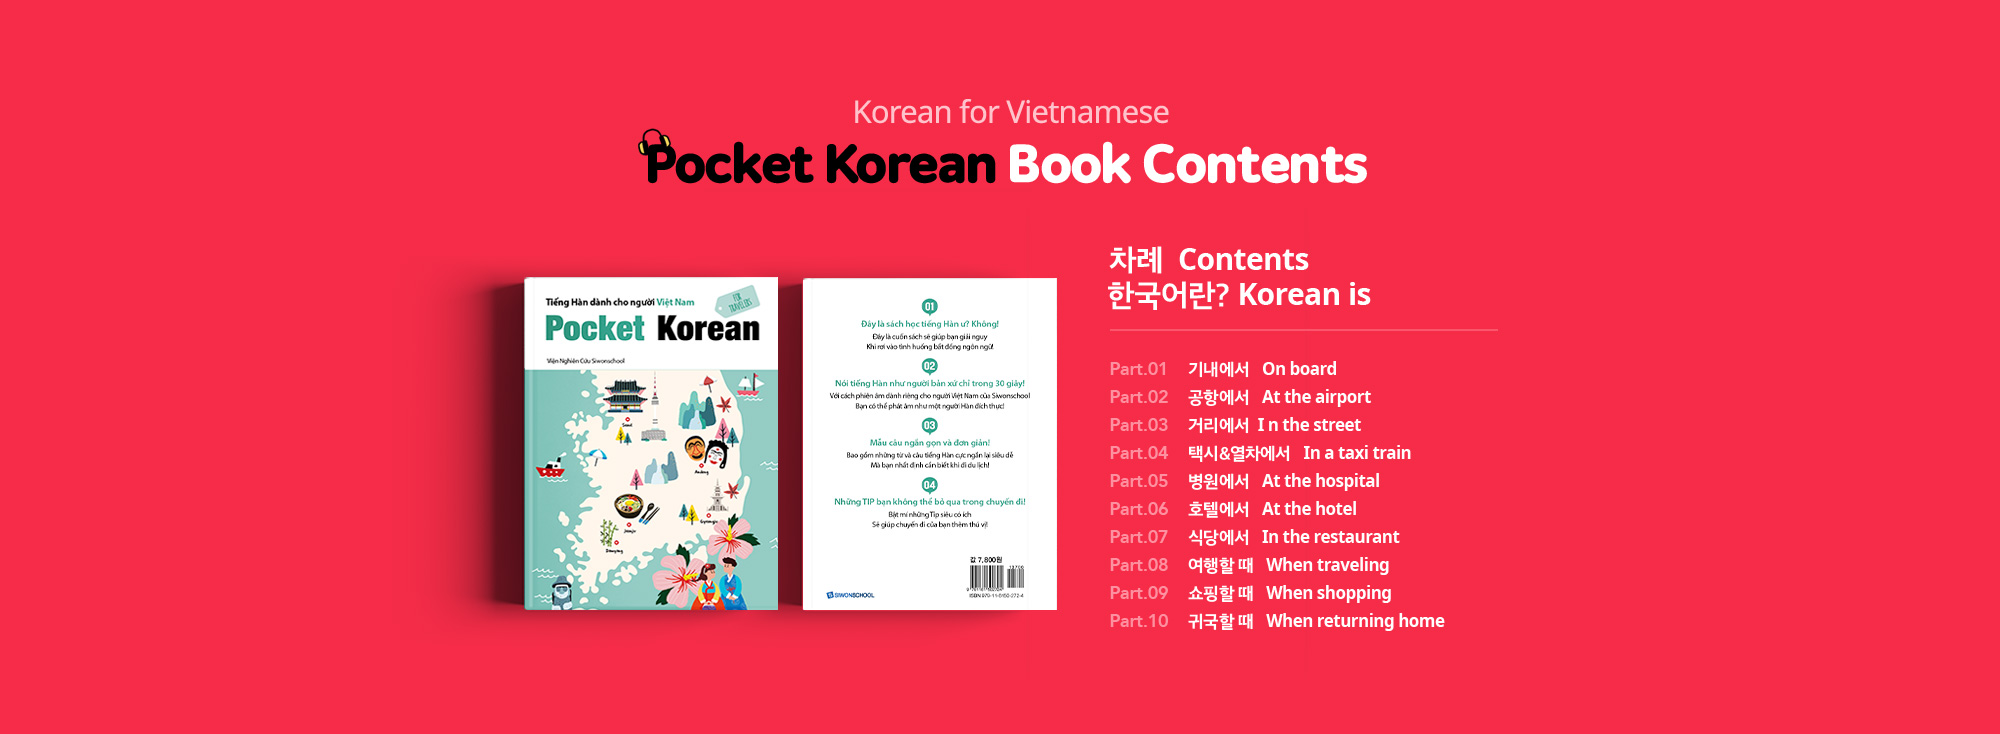 베트남인을 위한 한국어 Pocket Korean 도서 구성